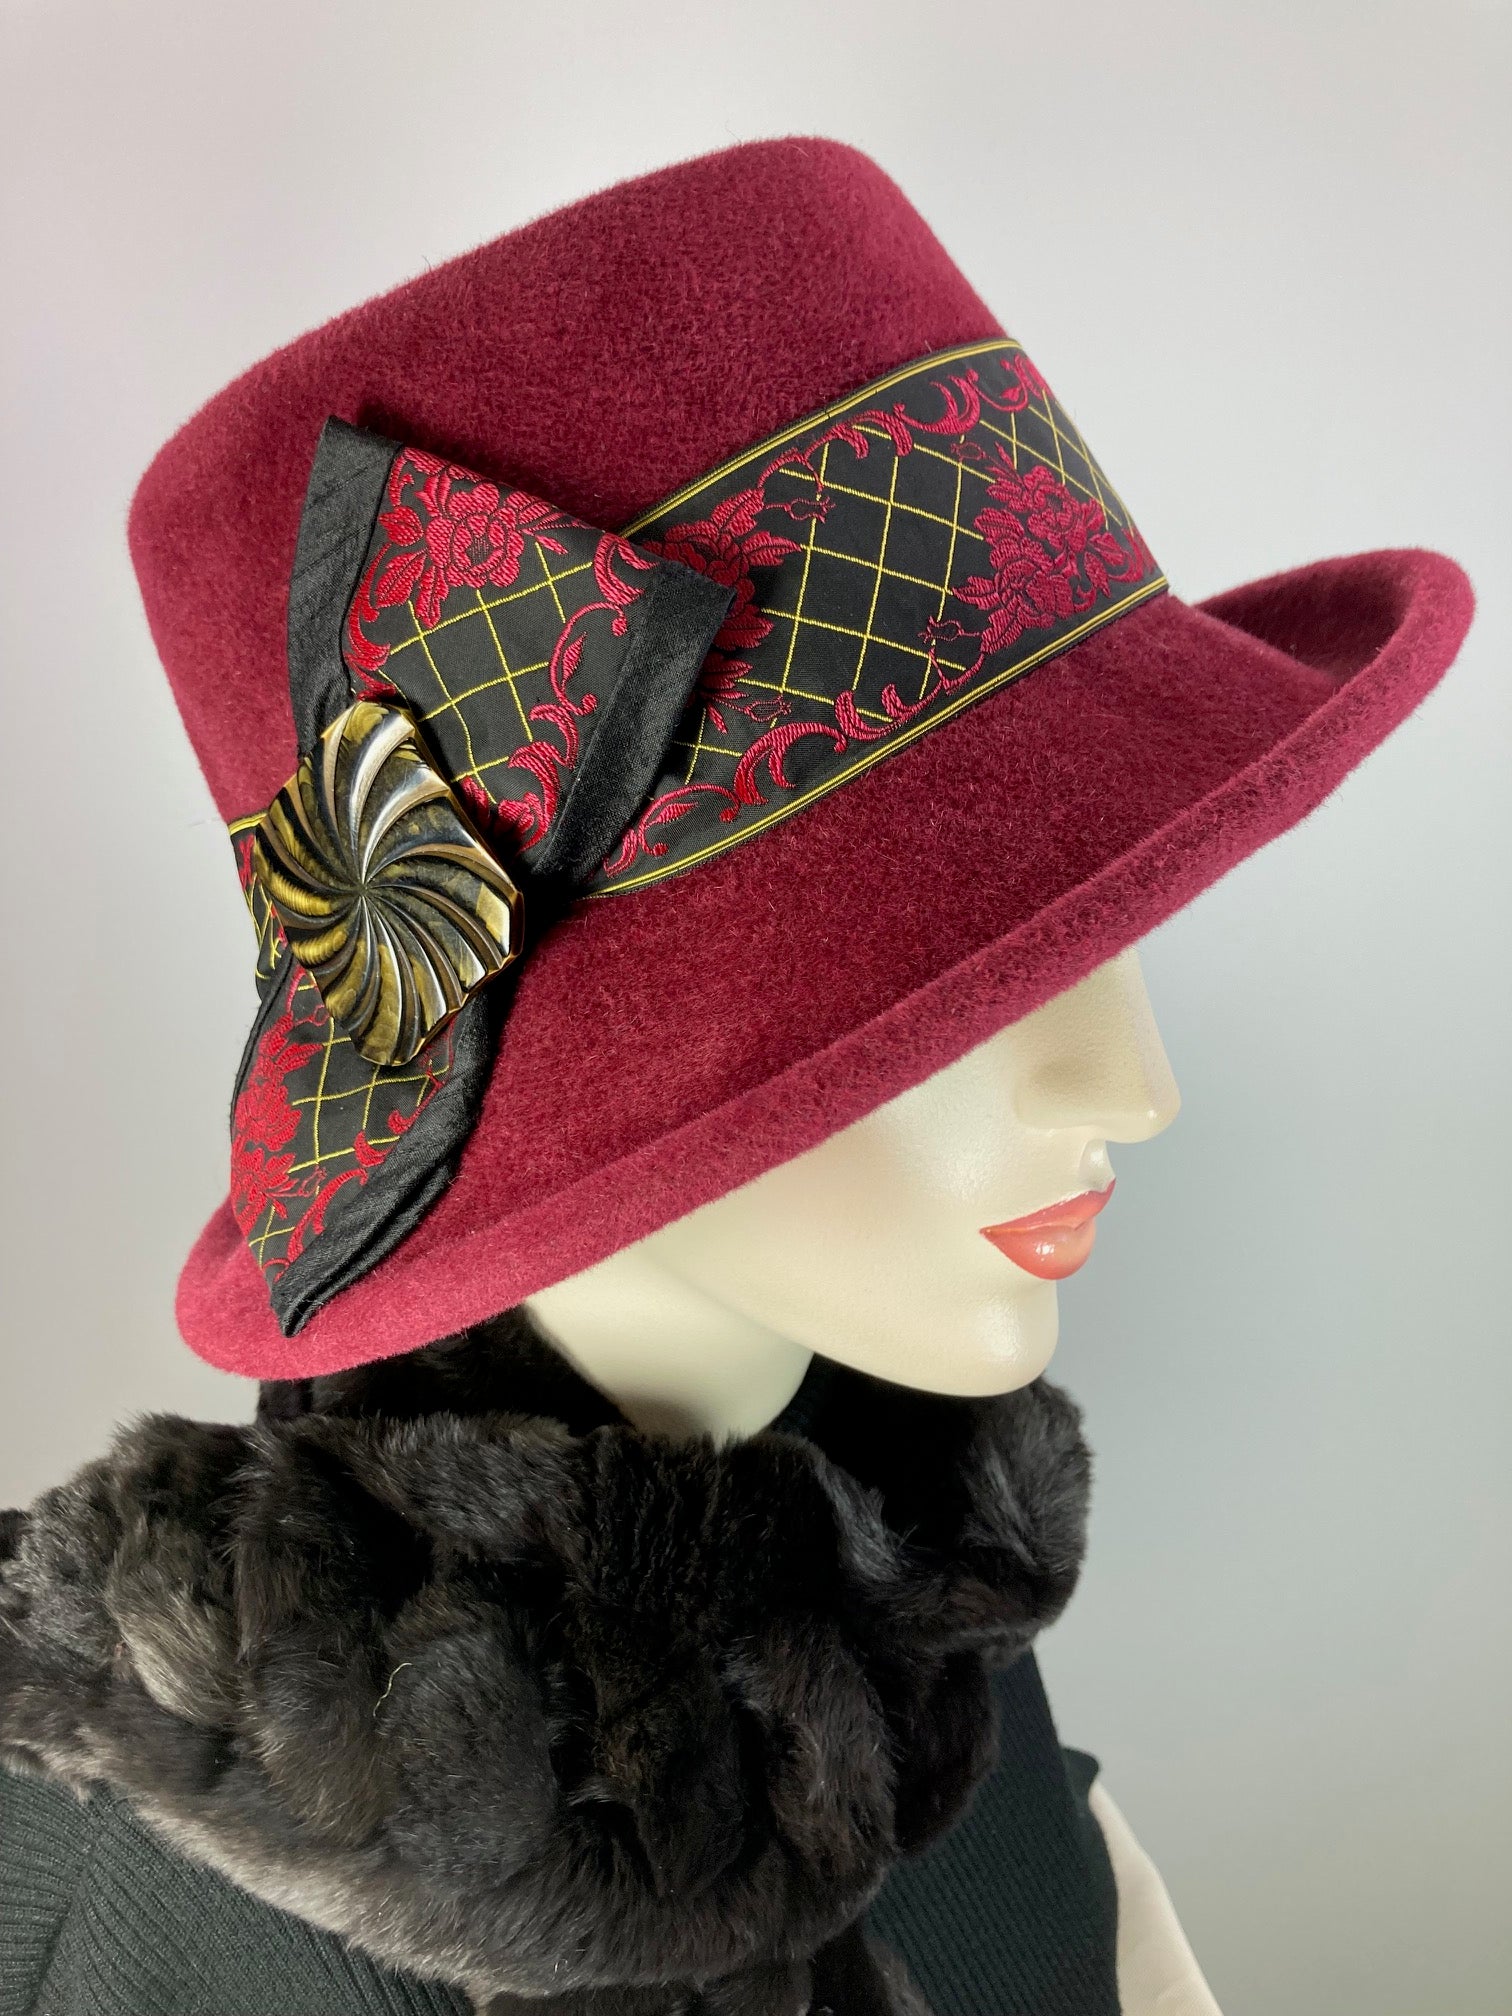 Women's Menswear Warm Wool Felt Pork Pie Fedora Hat in Burgundy Wine for Winter, Ladies Winter Fedora Hat